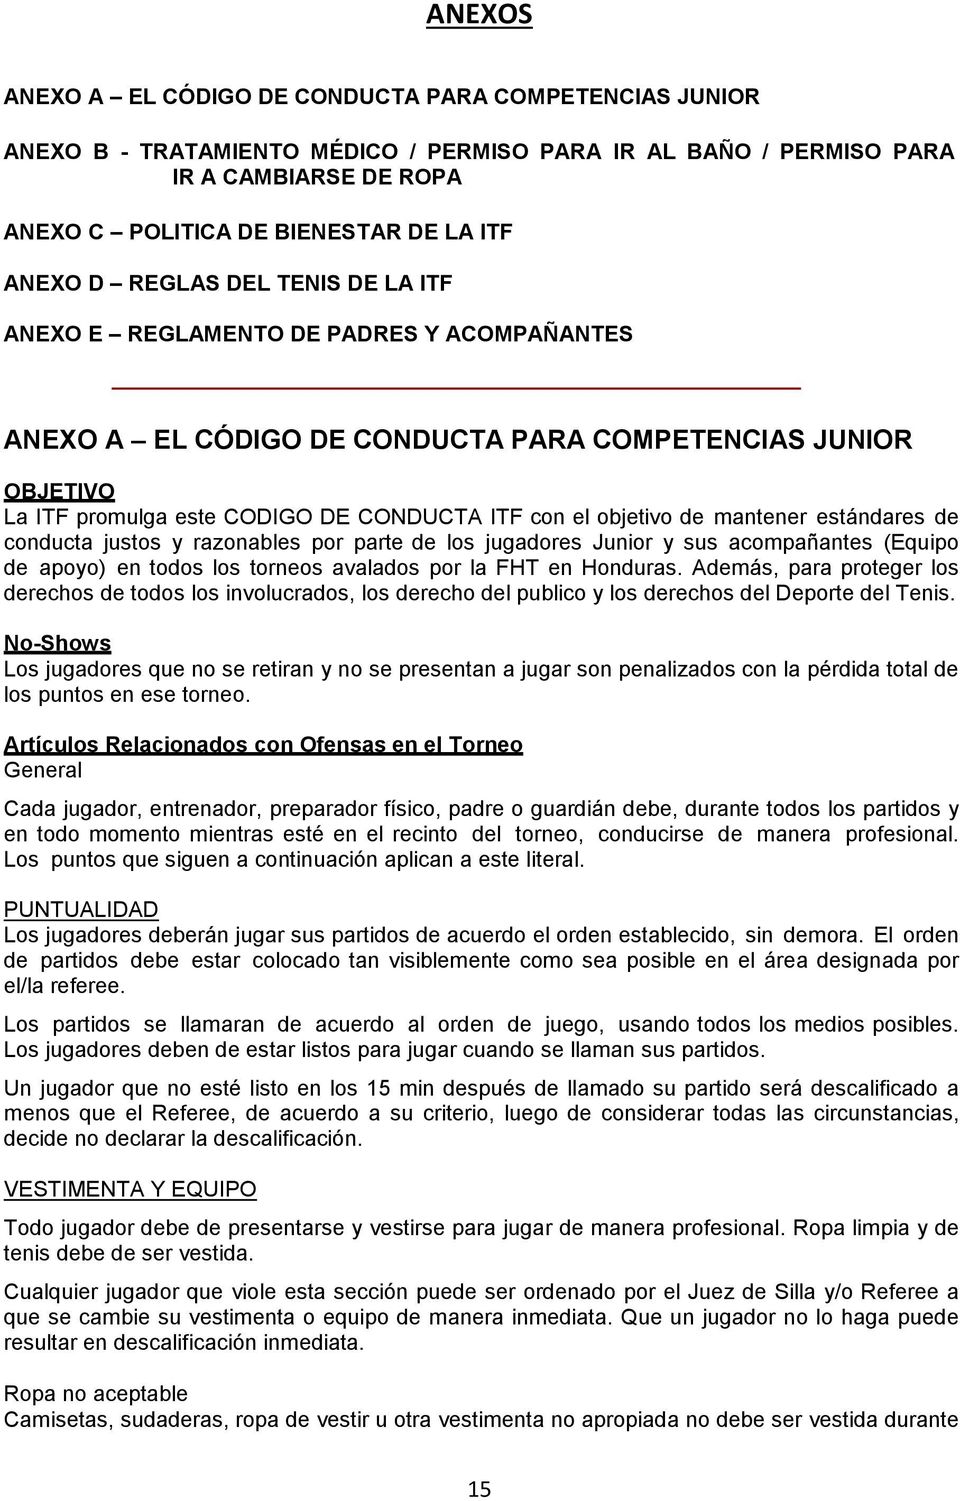 objetivo de mantener estándares de conducta justos y razonables por parte de los jugadores Junior y sus acompañantes (Equipo de apoyo) en todos los torneos avalados por la FHT en Honduras.